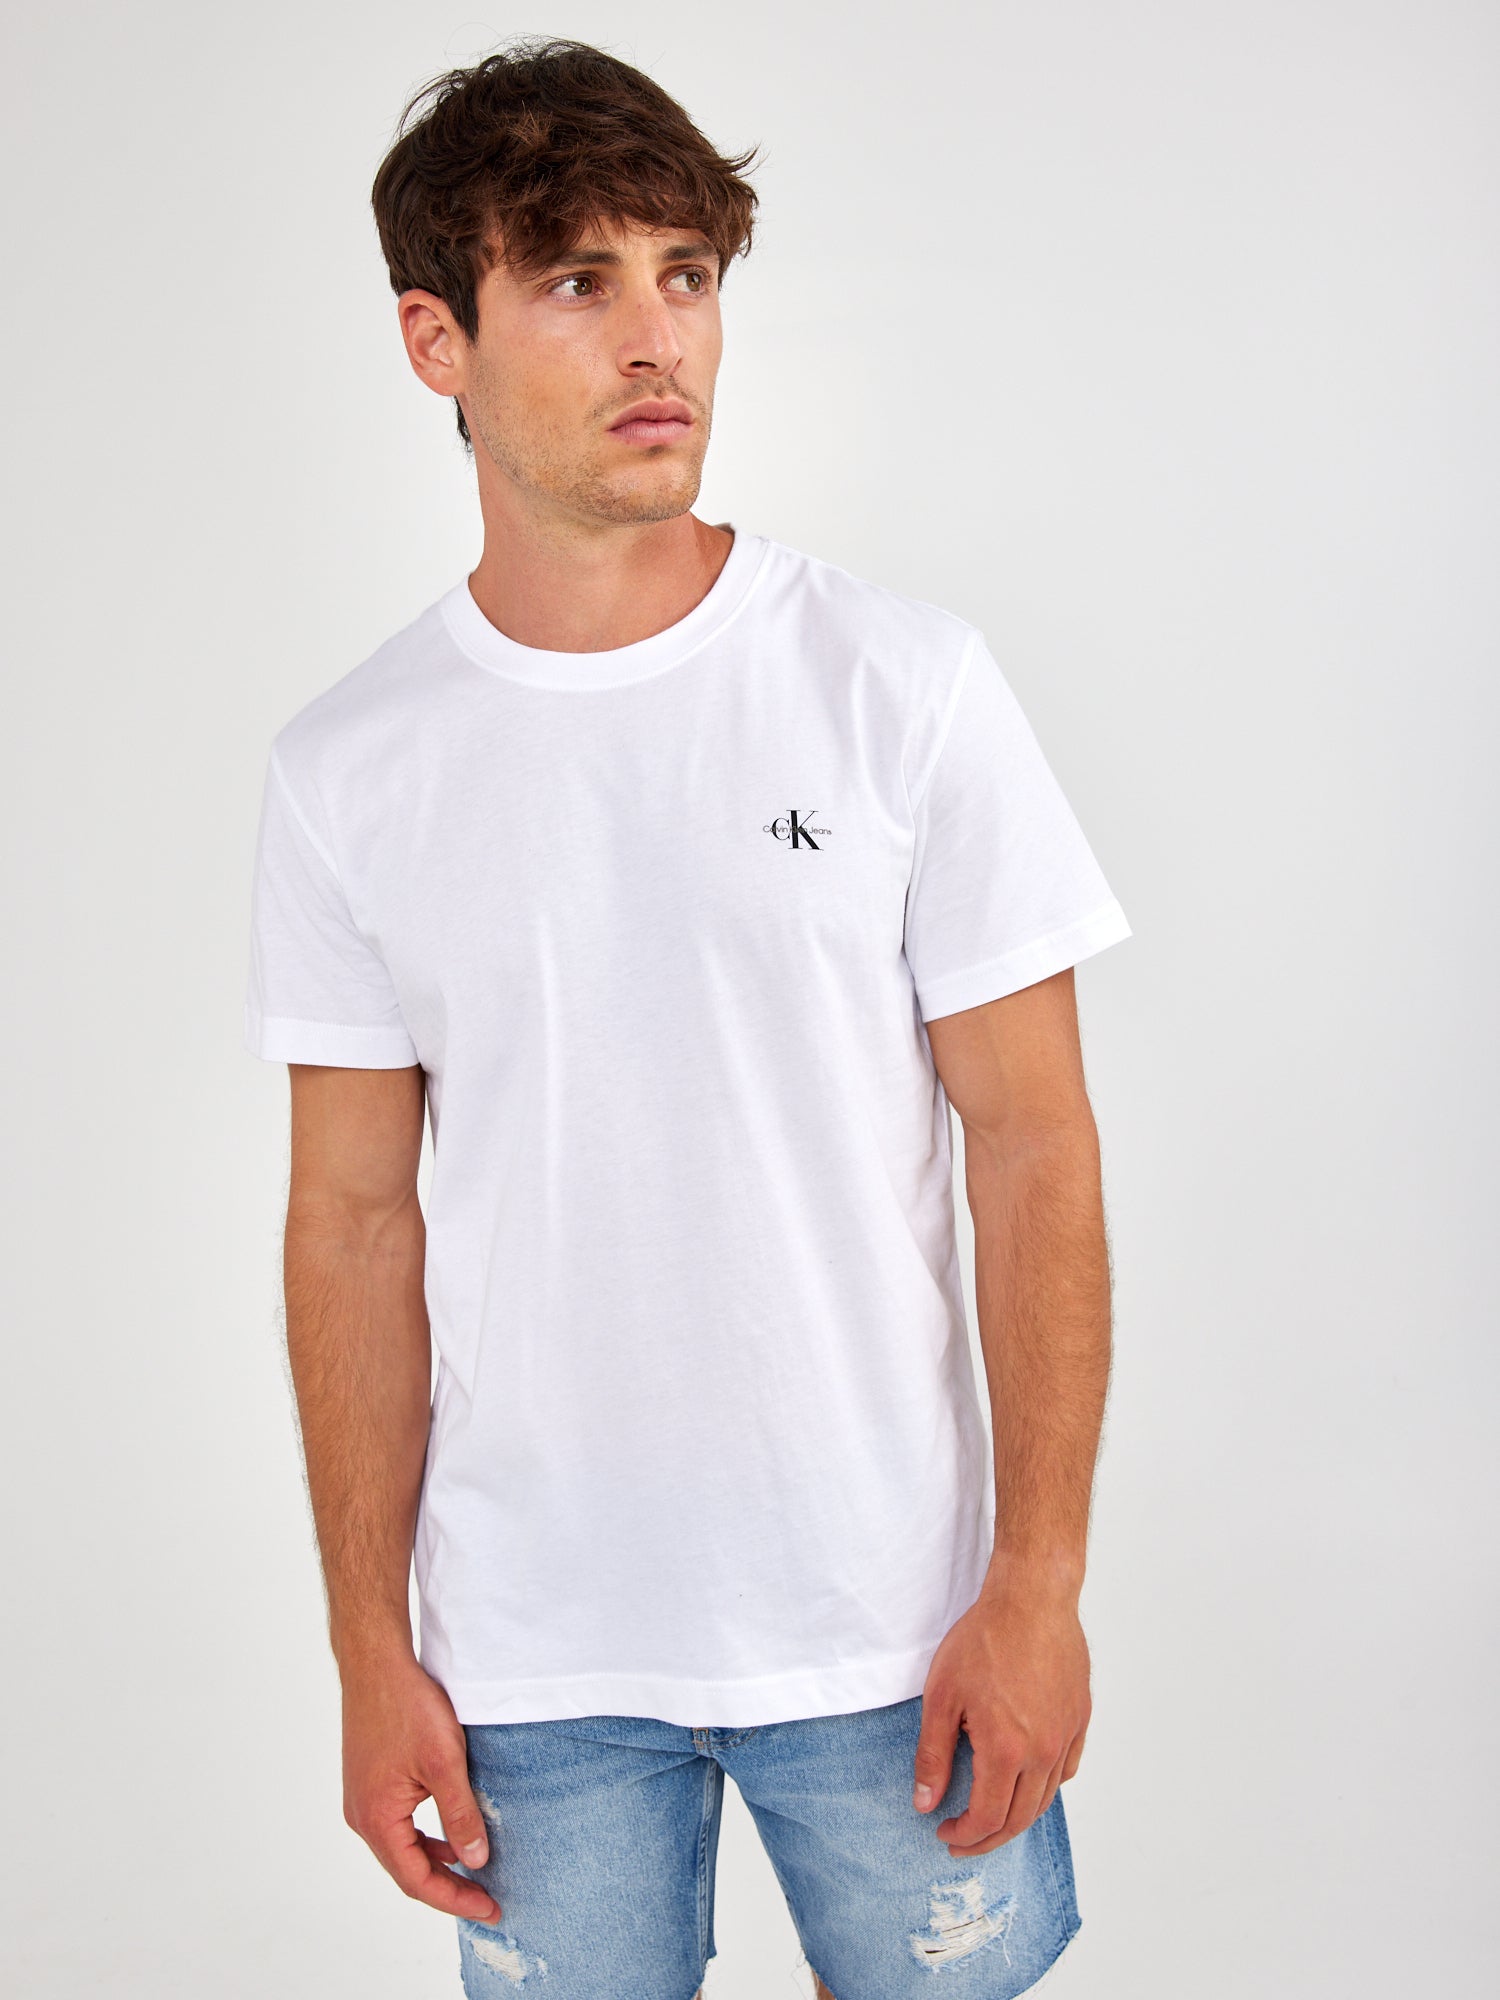 מארז זוג חולצות עם הדפס לוגו- Ck|קלווין קליין